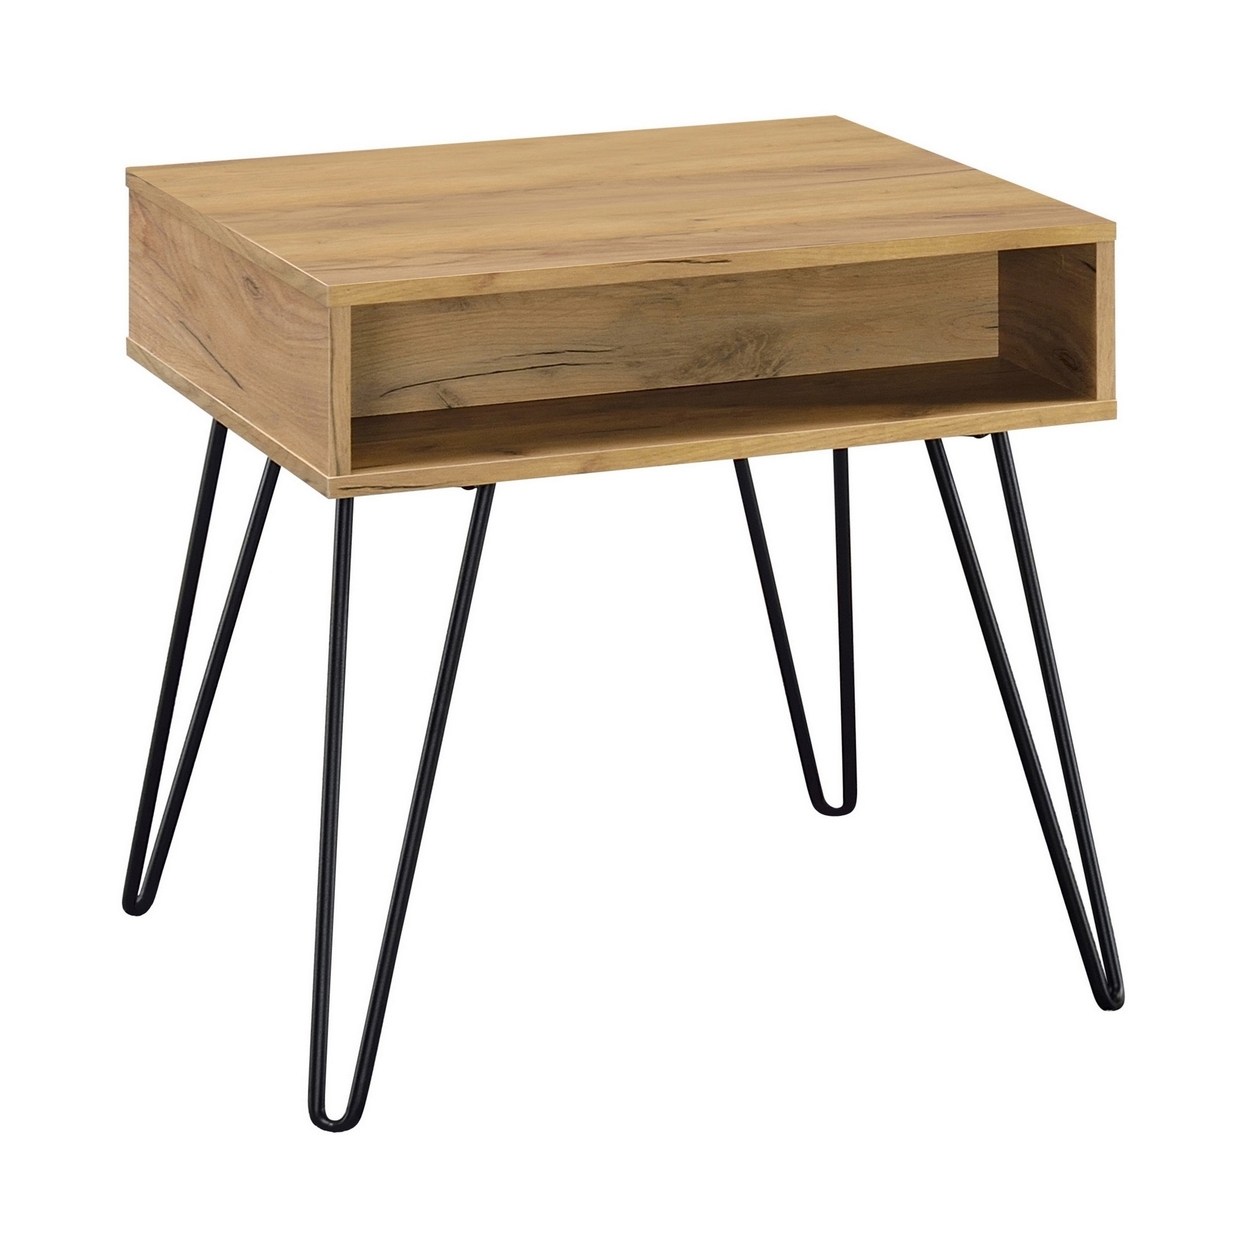 24 Inch Modern Side End Table, Golden Oak Wood, Black Metal Hairpin Legs